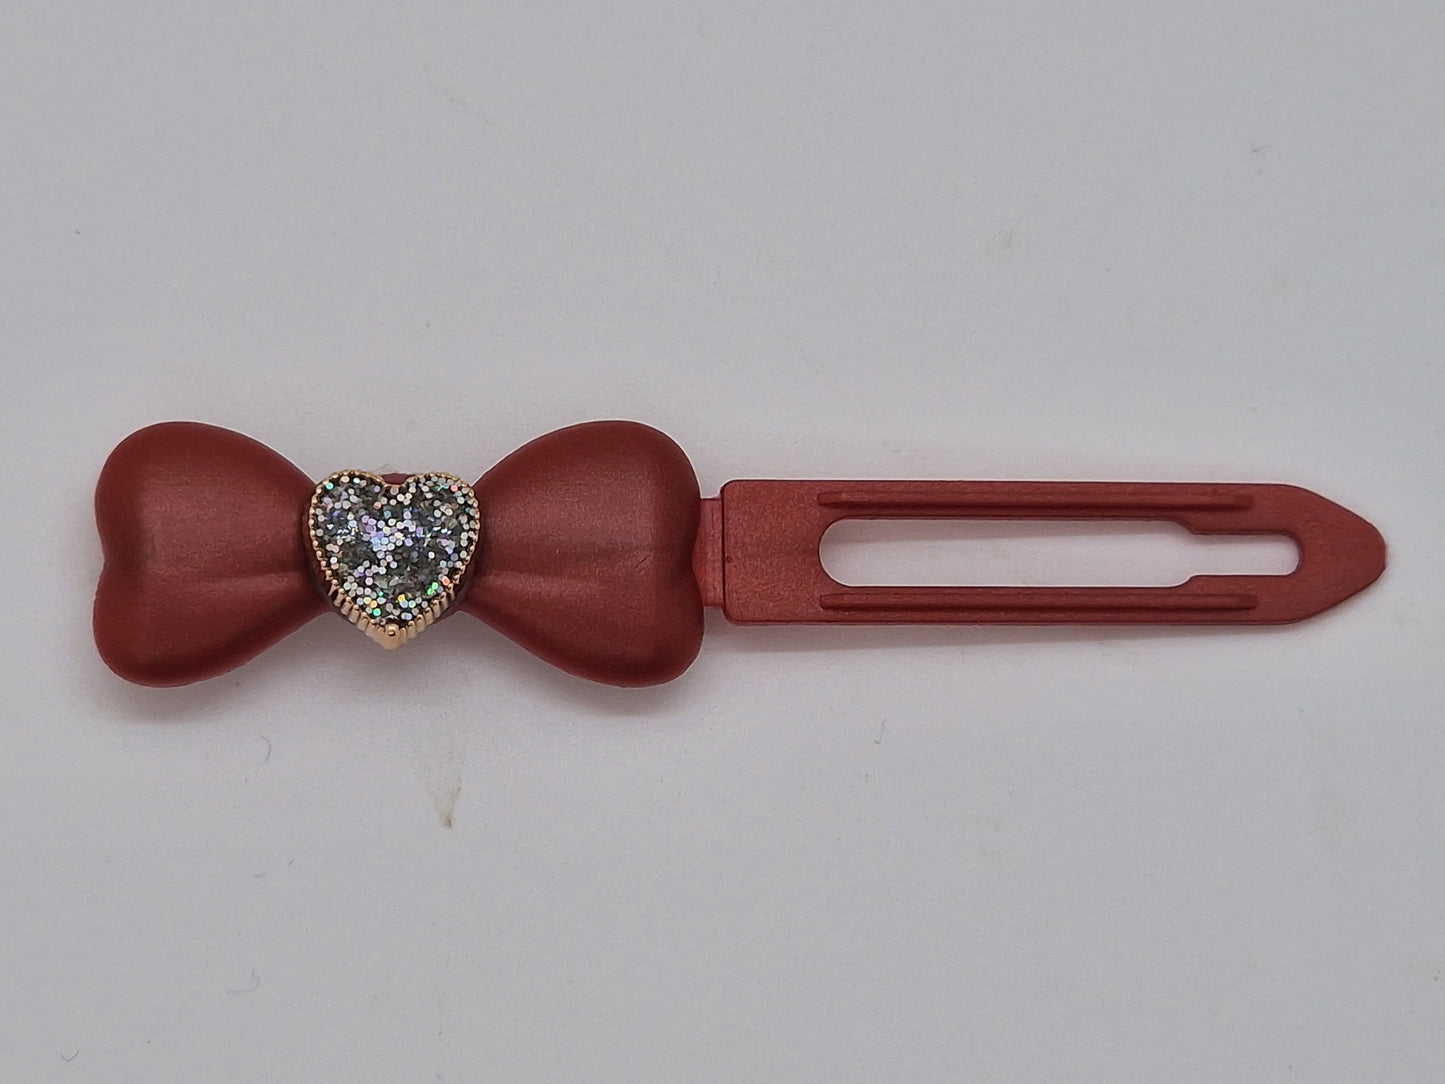 Glitter Diamante Heart Barrette 4.5cm Novelty clip